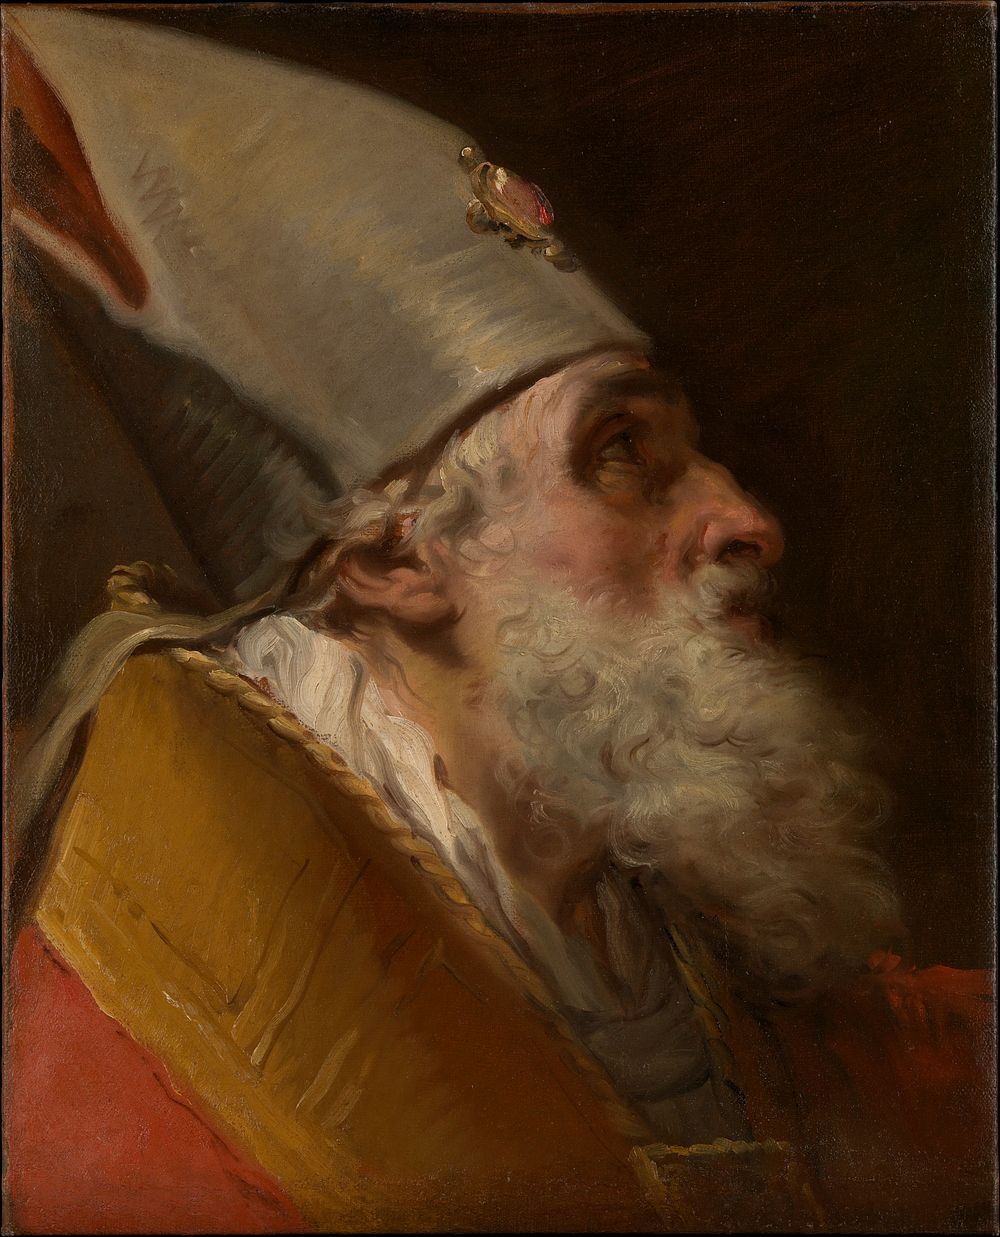 Head of a Bishop by Gaetano Gandolfi